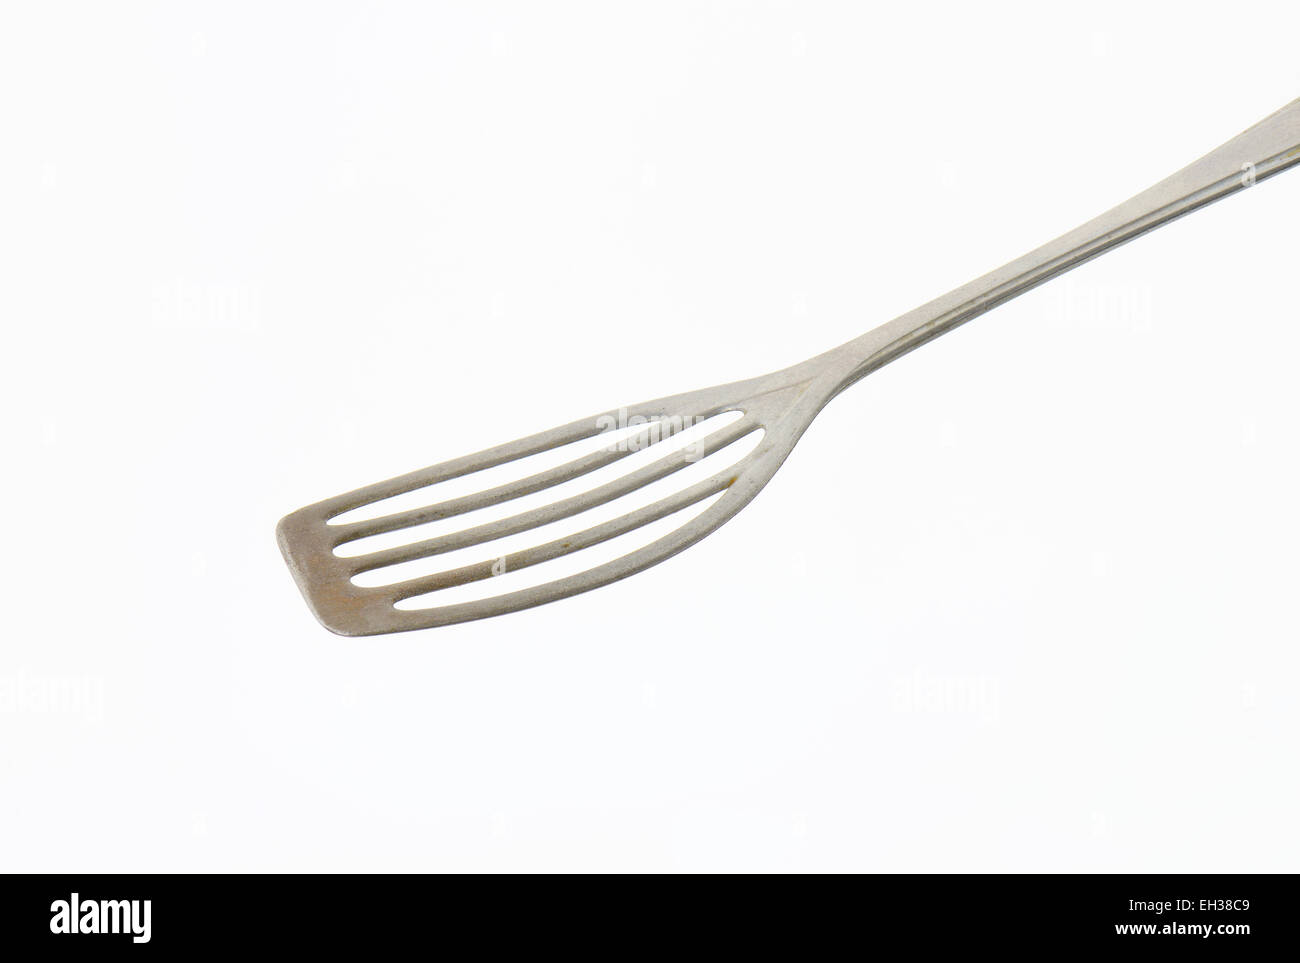 Metal spatula on white background Stock Photo